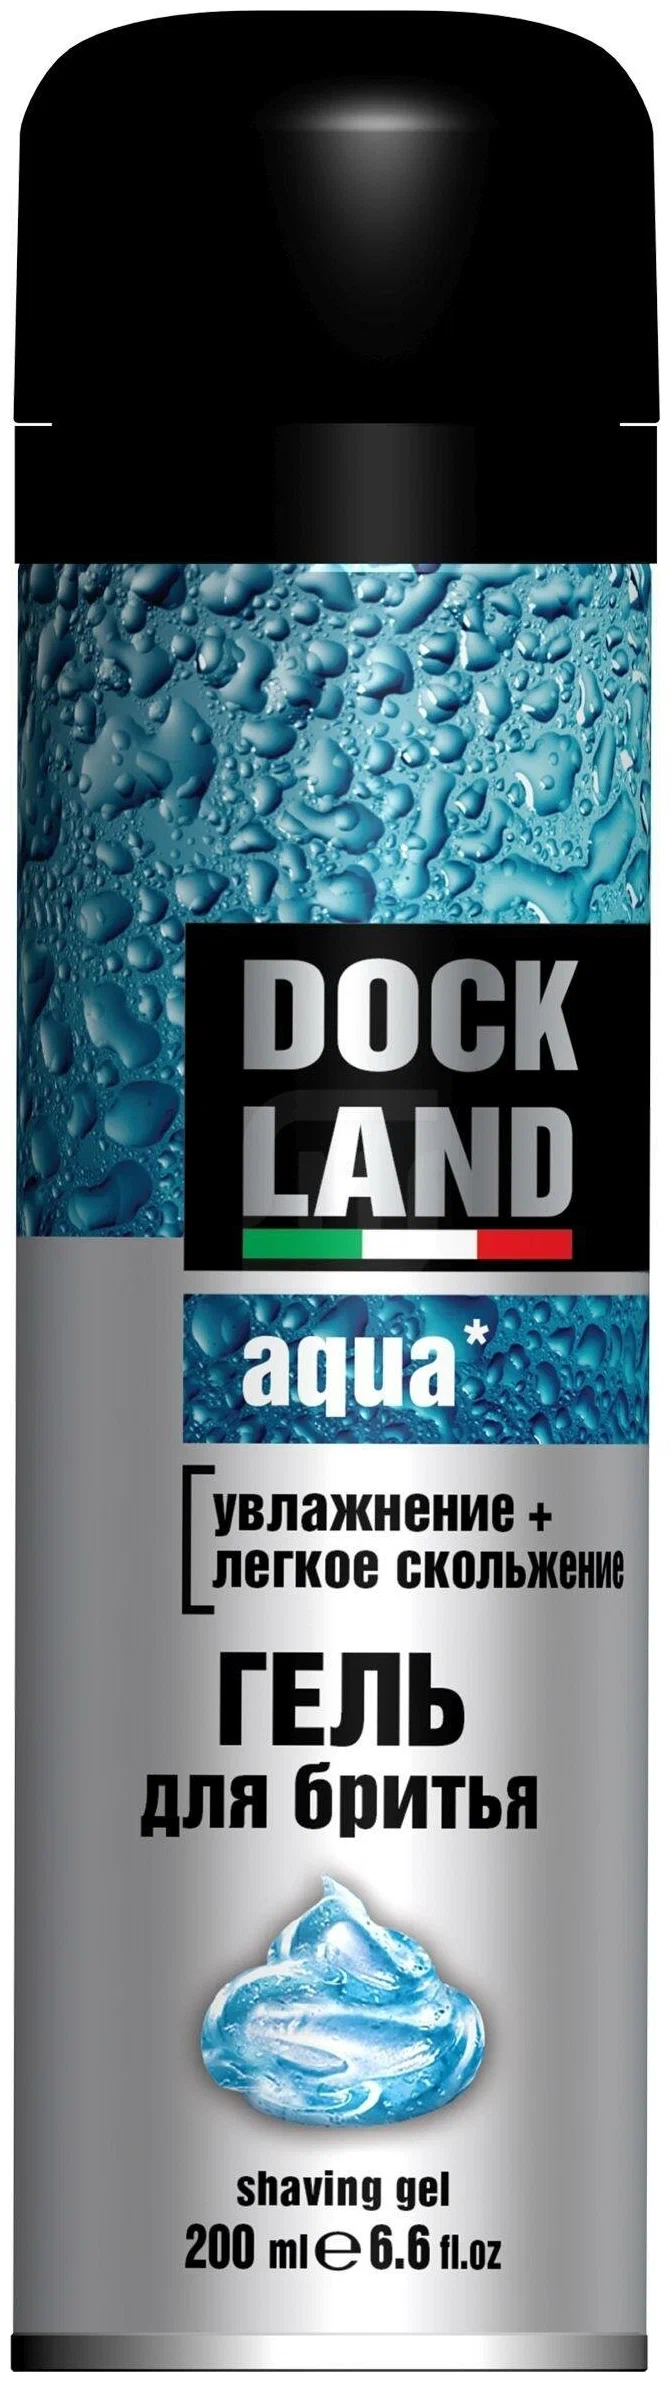 Гель для бритья Dockland Aqua увлажнение, лёгкое скольжение, 200 мл